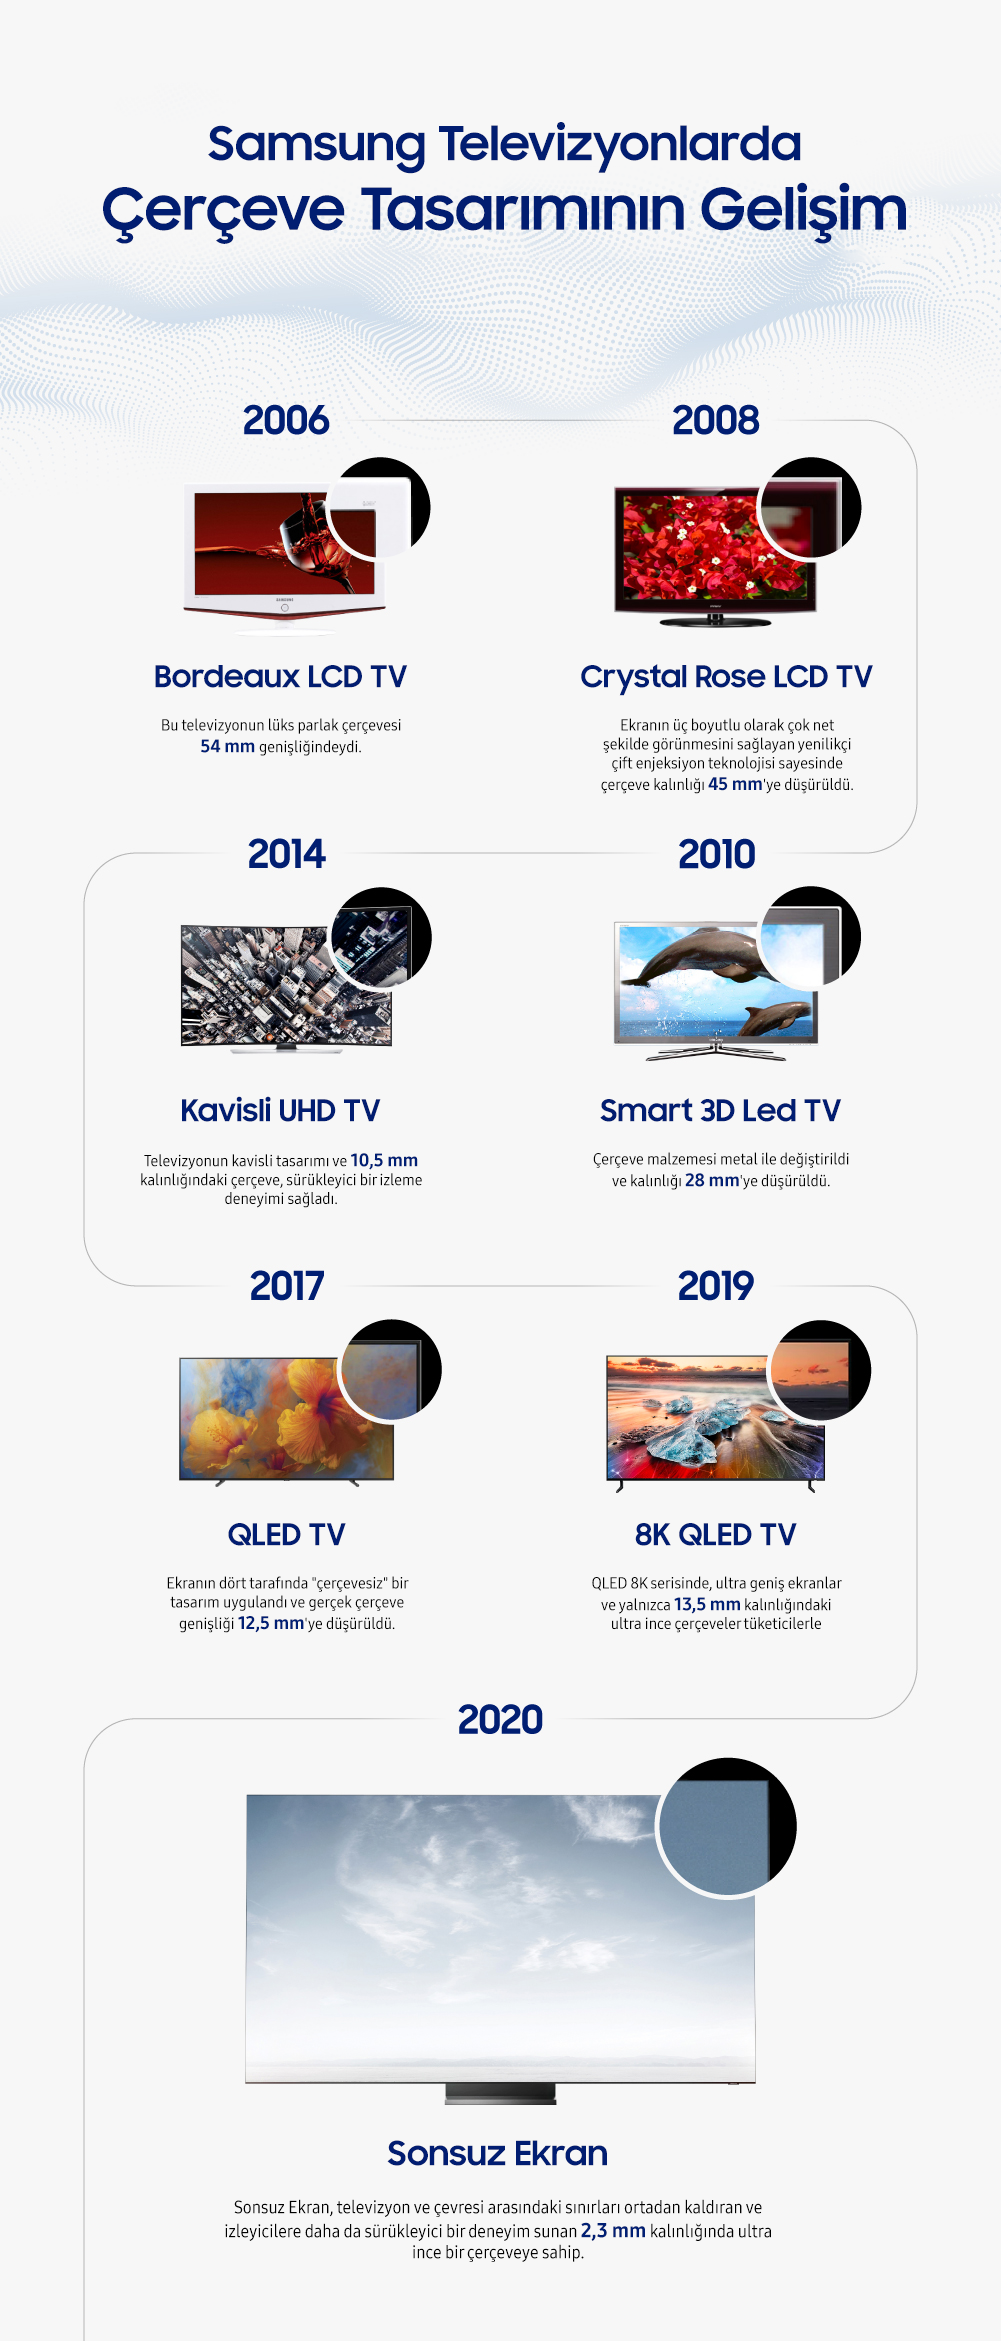 Samsung TV'lerin Tarihsel Ekran Boyutu Gelişimi, 54mm'den 2,3mm'ye!